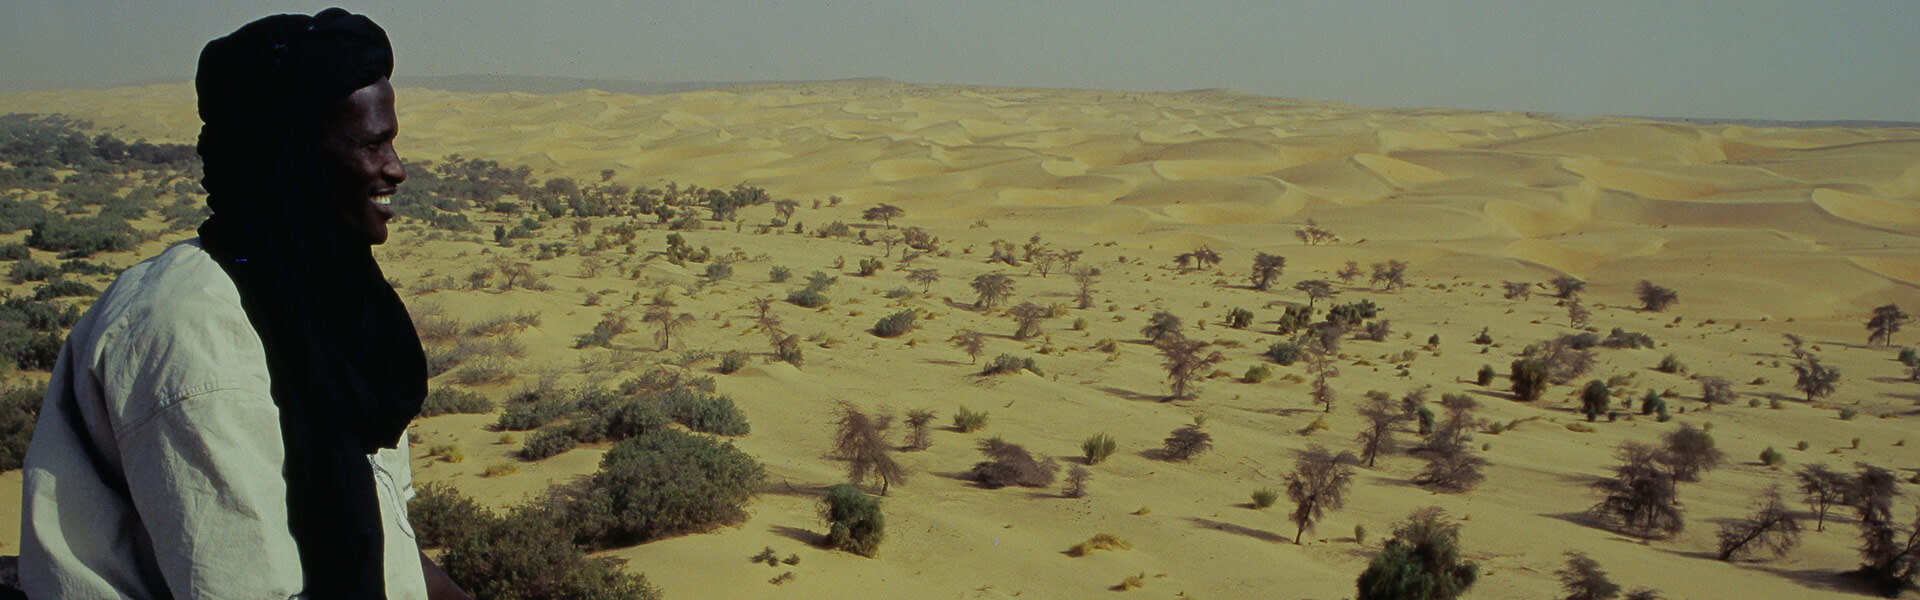 Vivre comme un nomade en Mauritanie | Sous l'Acacia